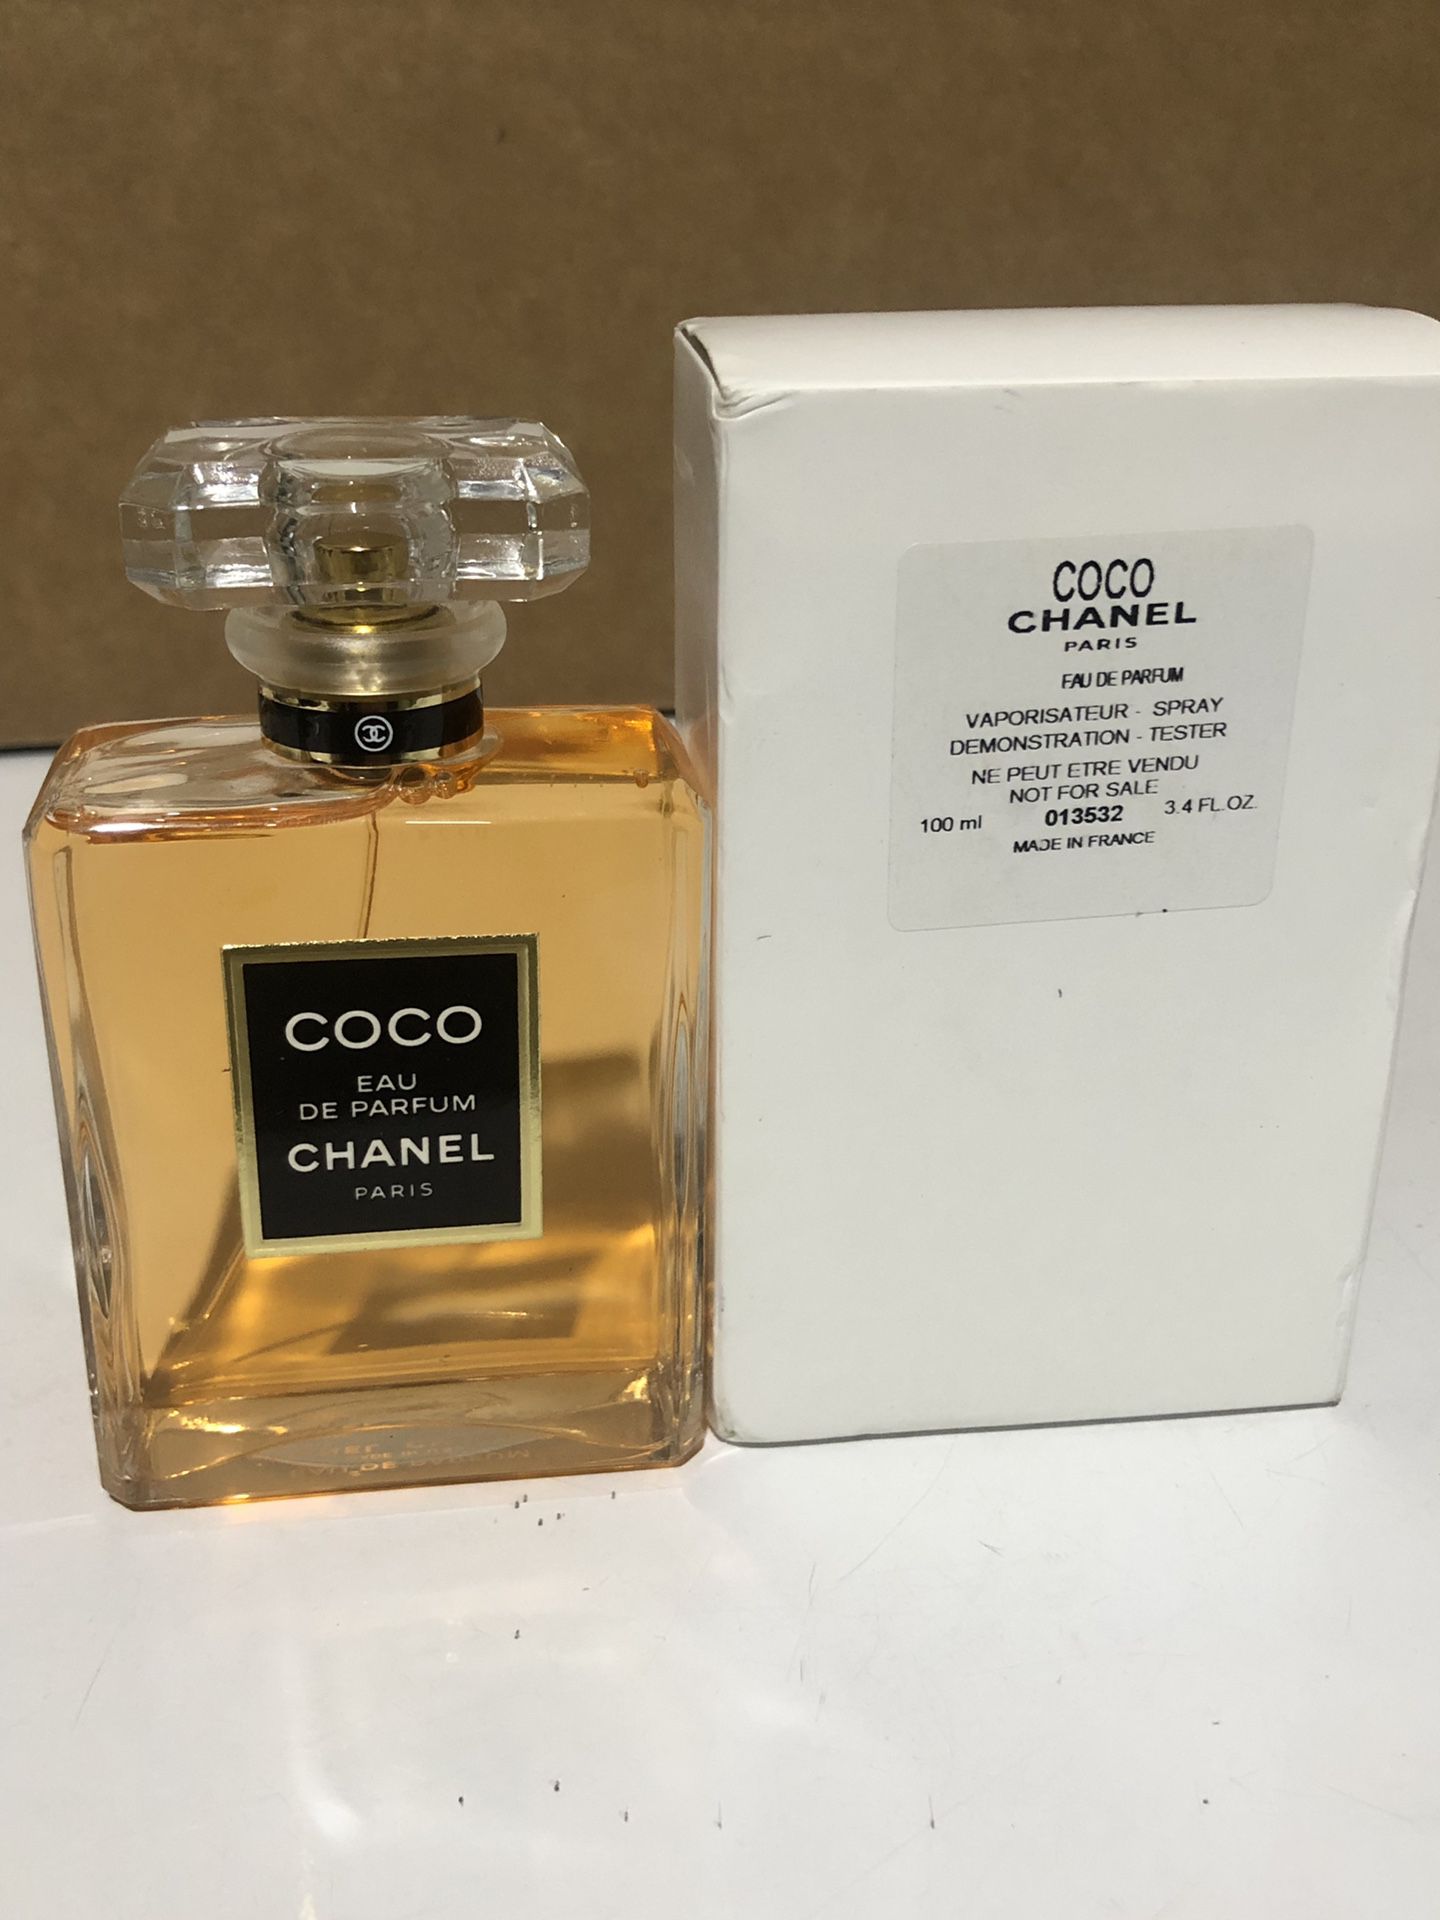 Chanel Coco Eau De Parfum Vaporisateur Spray - 100 ml / 3.4 oz